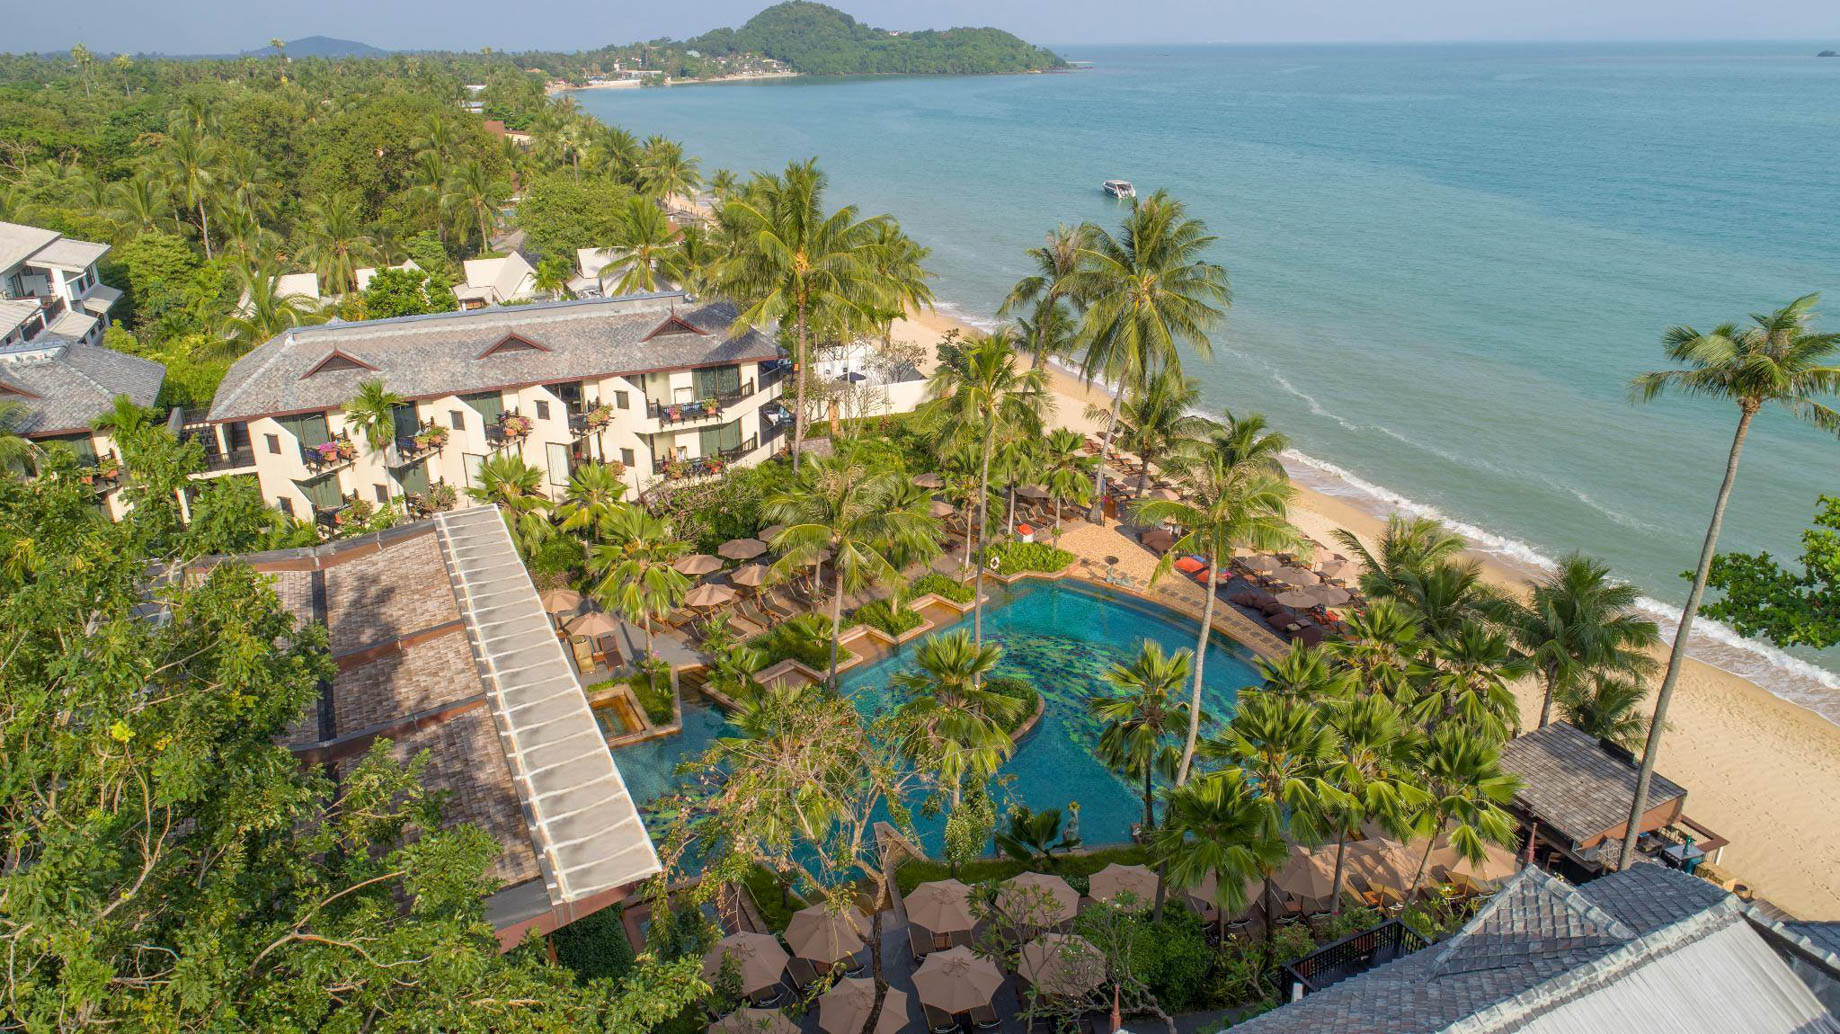 Anantara Bophut Koh Samui Resort - Thailand - Aerial View